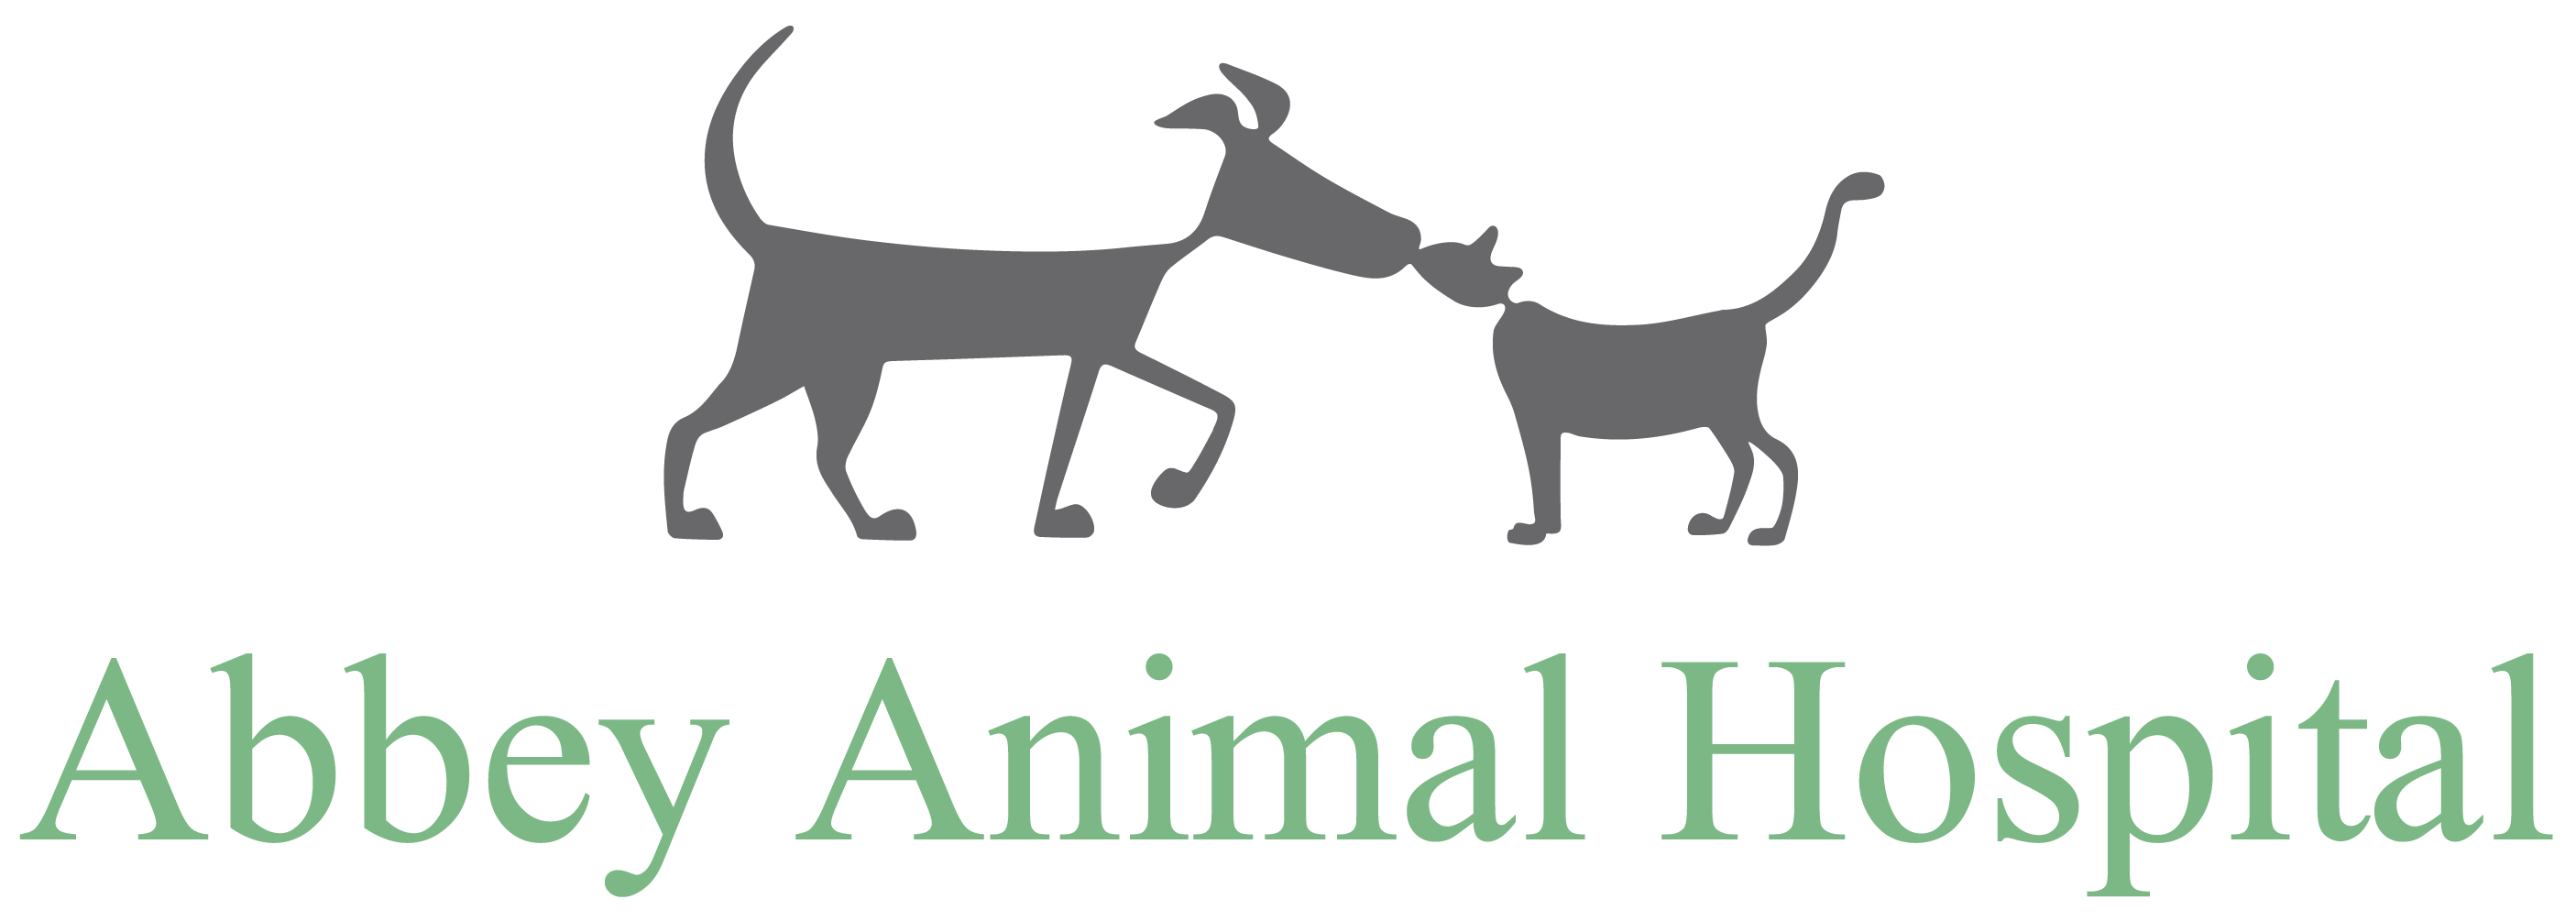 Abbey Animal Hospital: Veterinarian in Oakville, ON